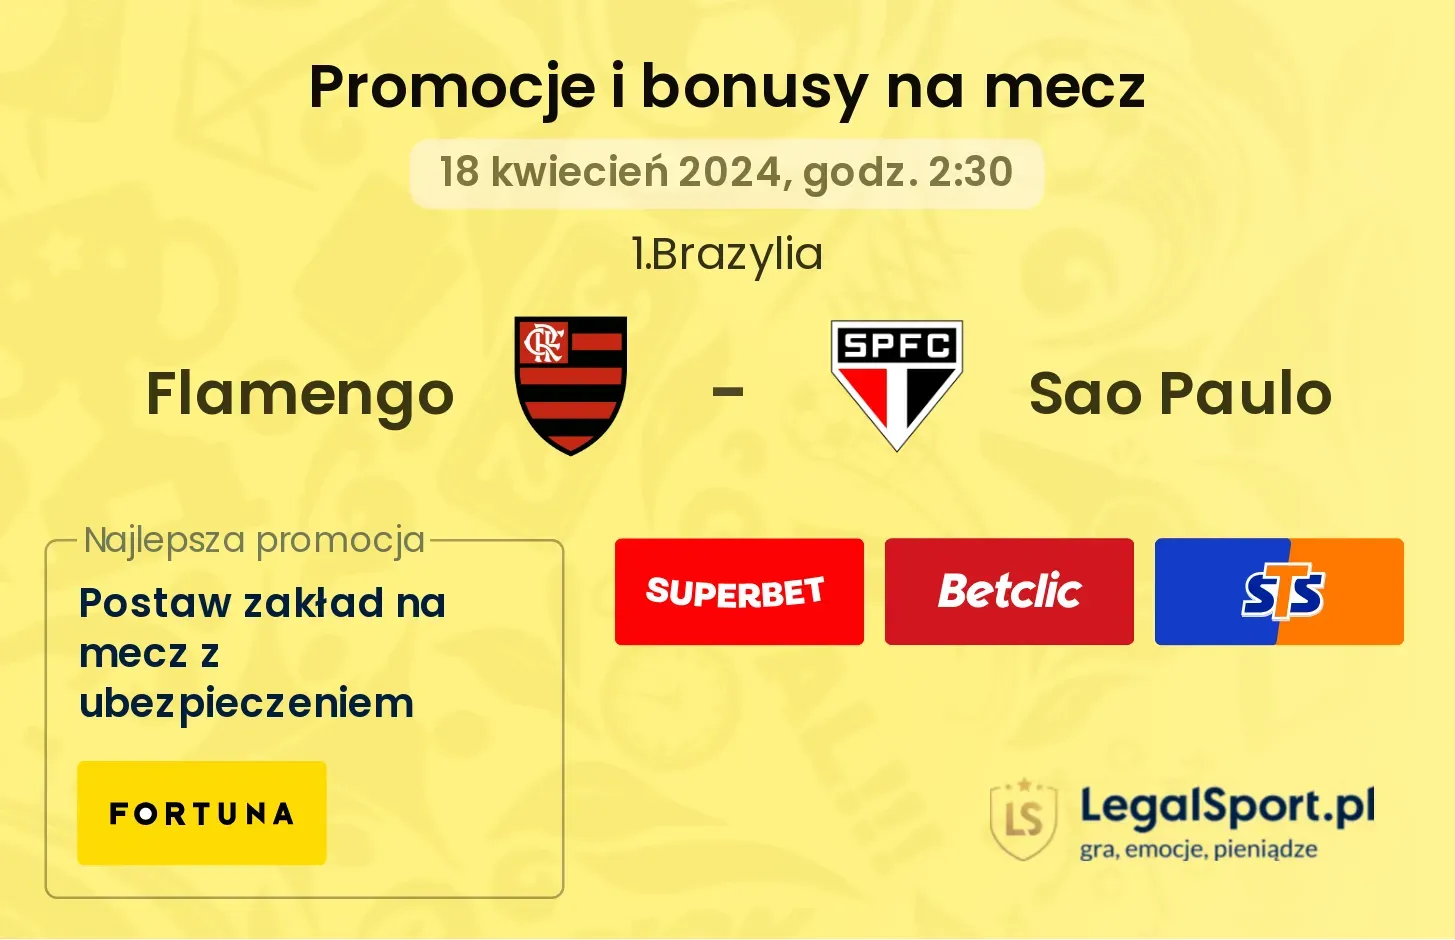 Flamengo - Sao Paulo promocje bonusy na mecz